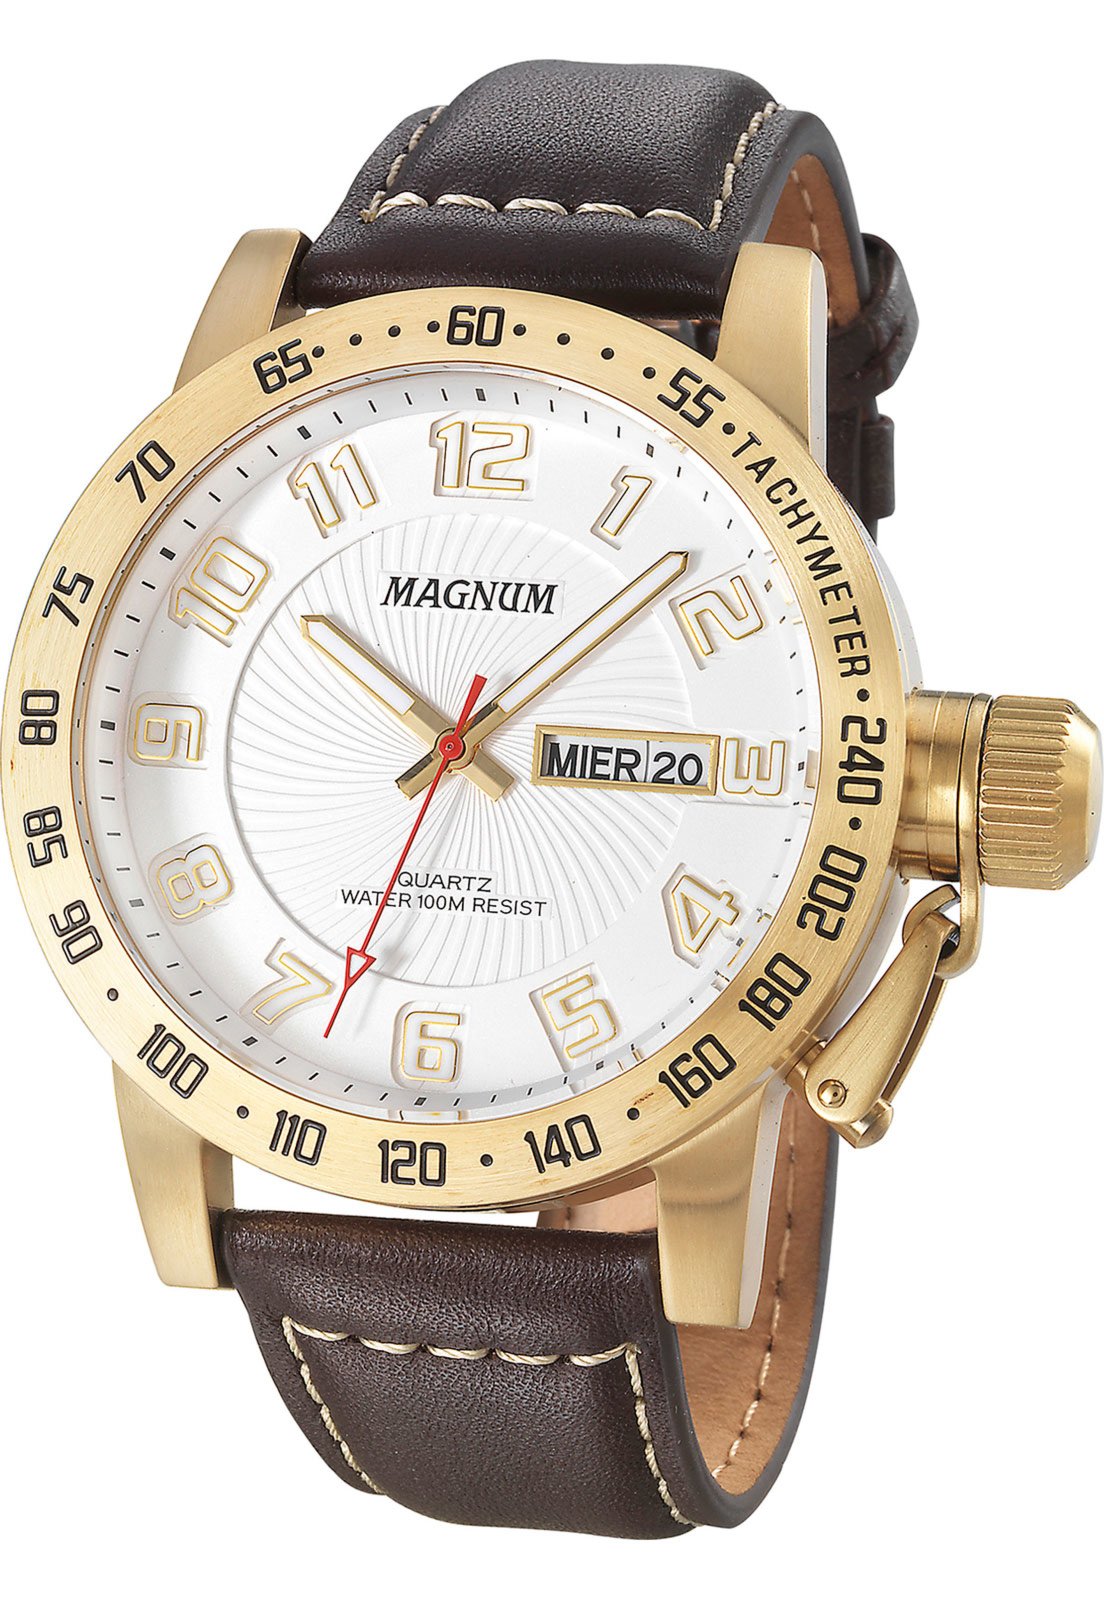 Relógios Magnum com pulseiras de couro - Magnum Relógios